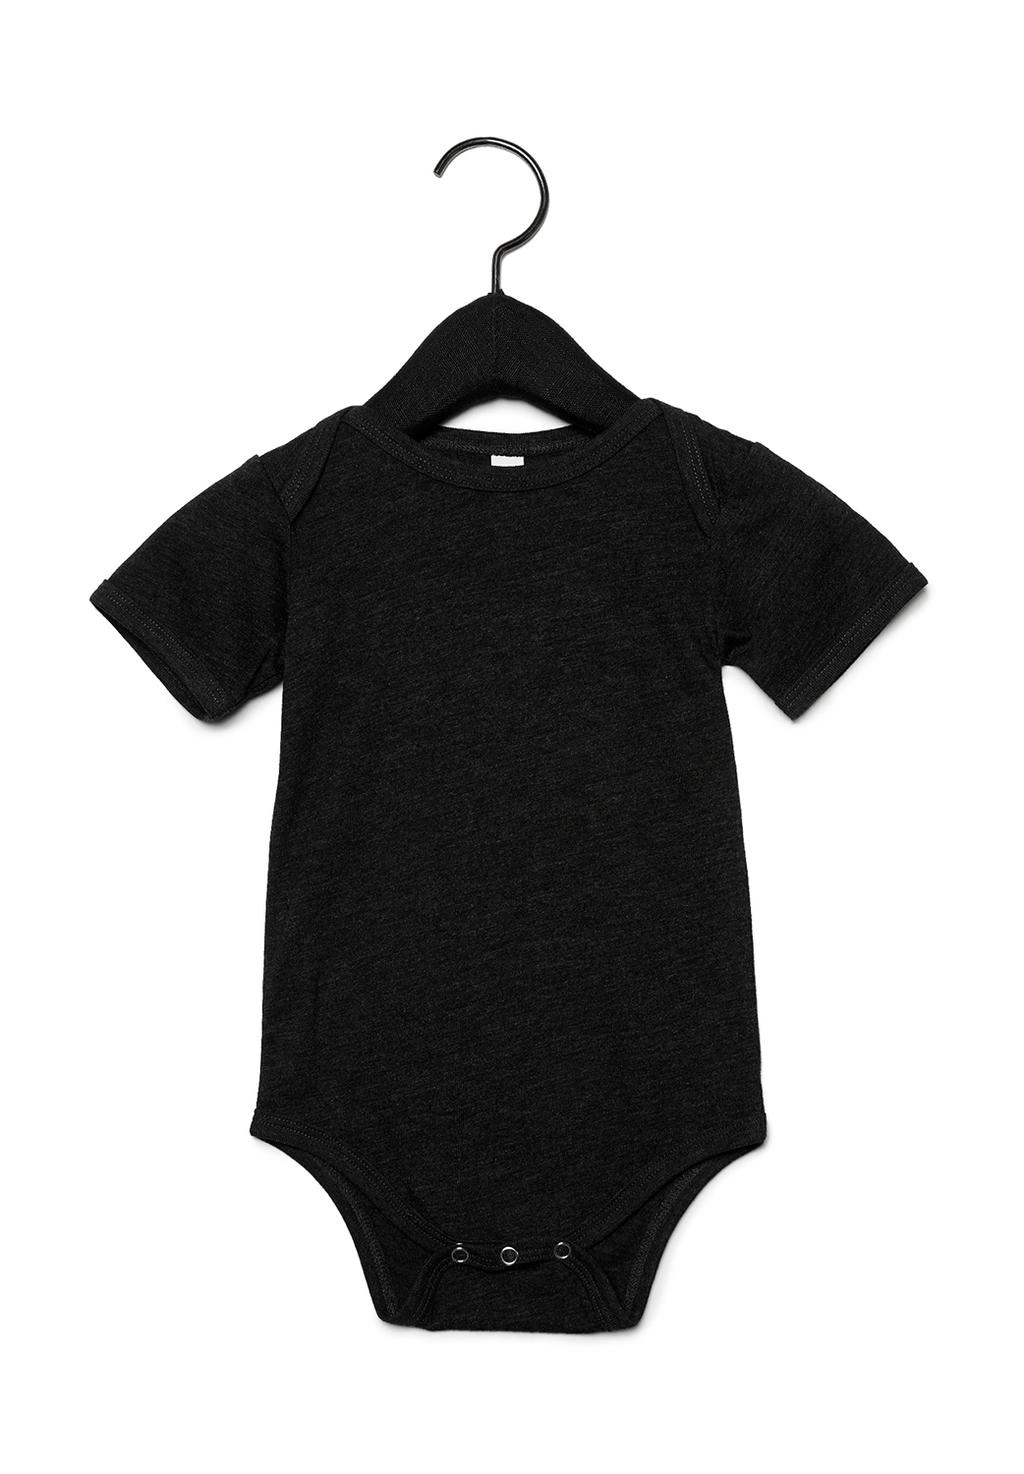 Baby Triblend Short Sleeve Onesie zum Besticken und Bedrucken in der Farbe Charcoal-Black Triblend mit Ihren Logo, Schriftzug oder Motiv.